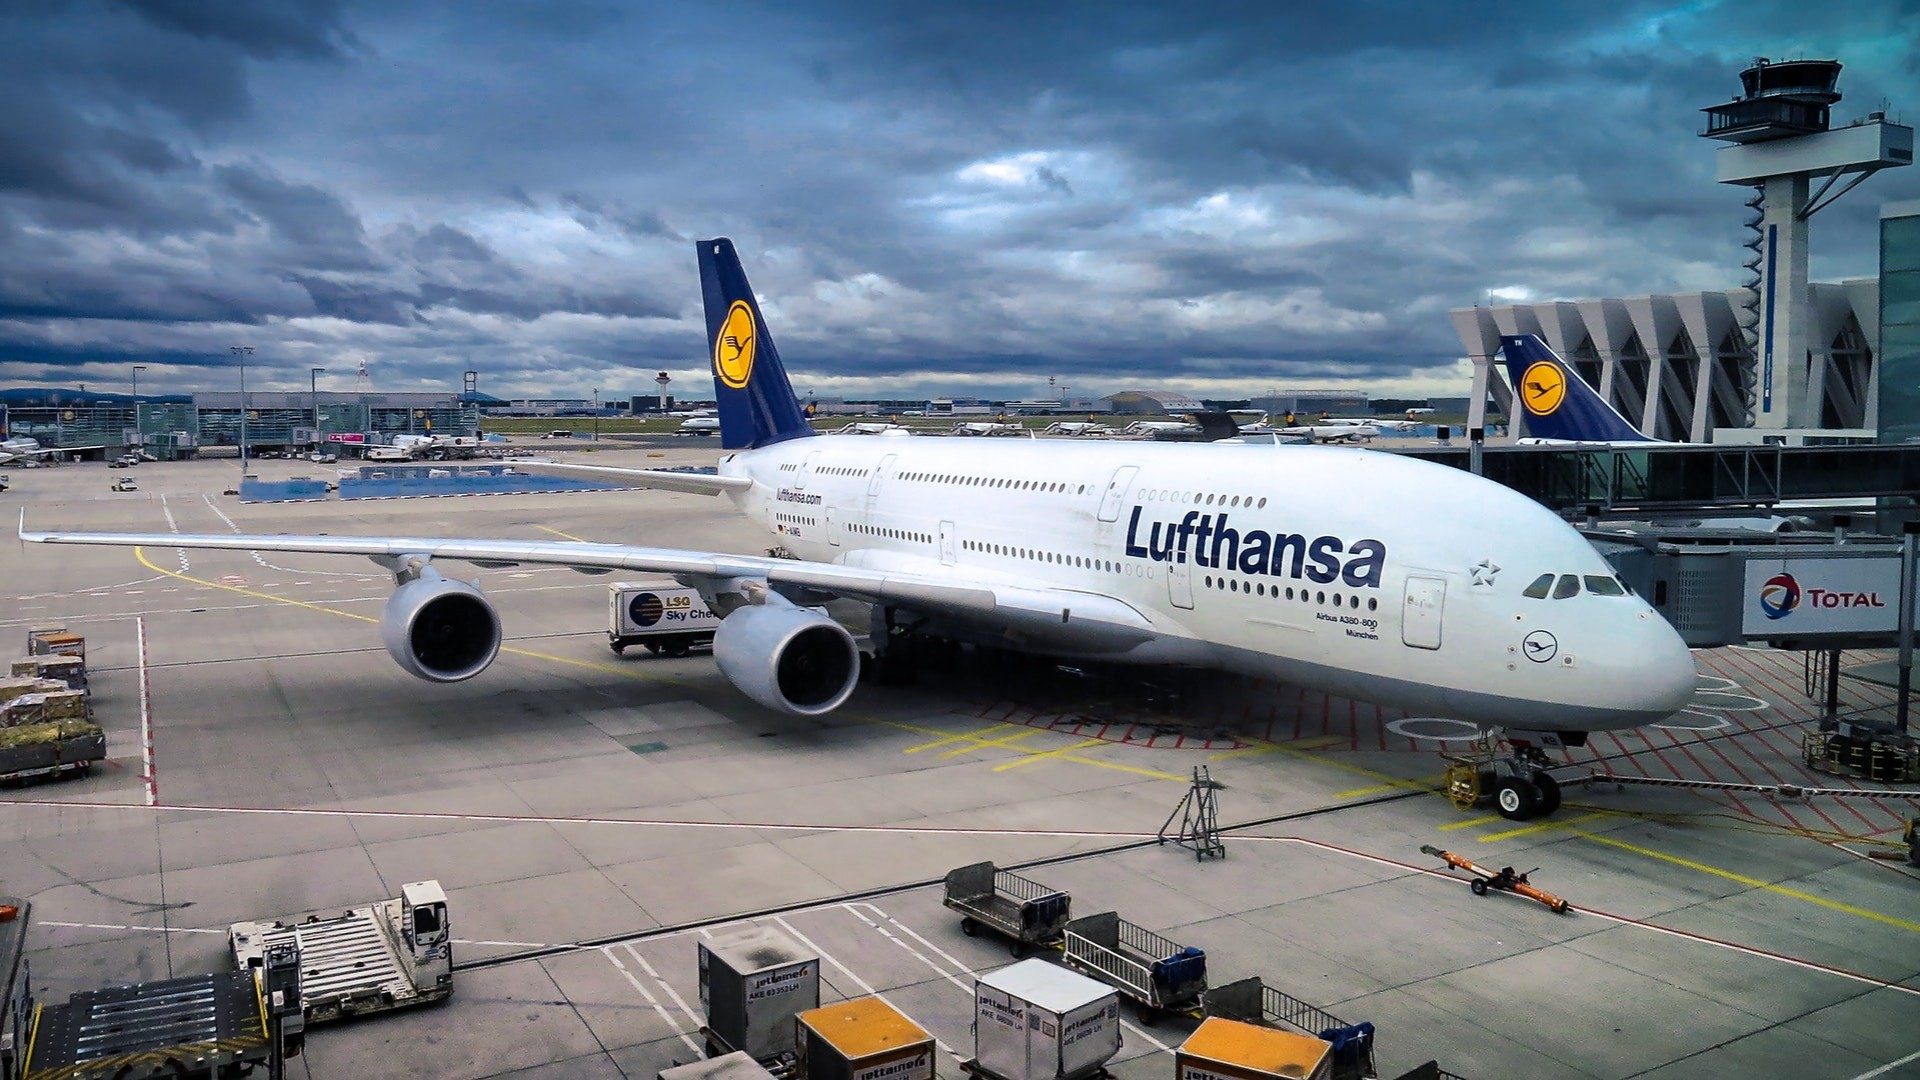 Das Bild zeigt ein Terminal am Flughafen an dem gerade ein Flugzeug der Lufthansa entladen wird.